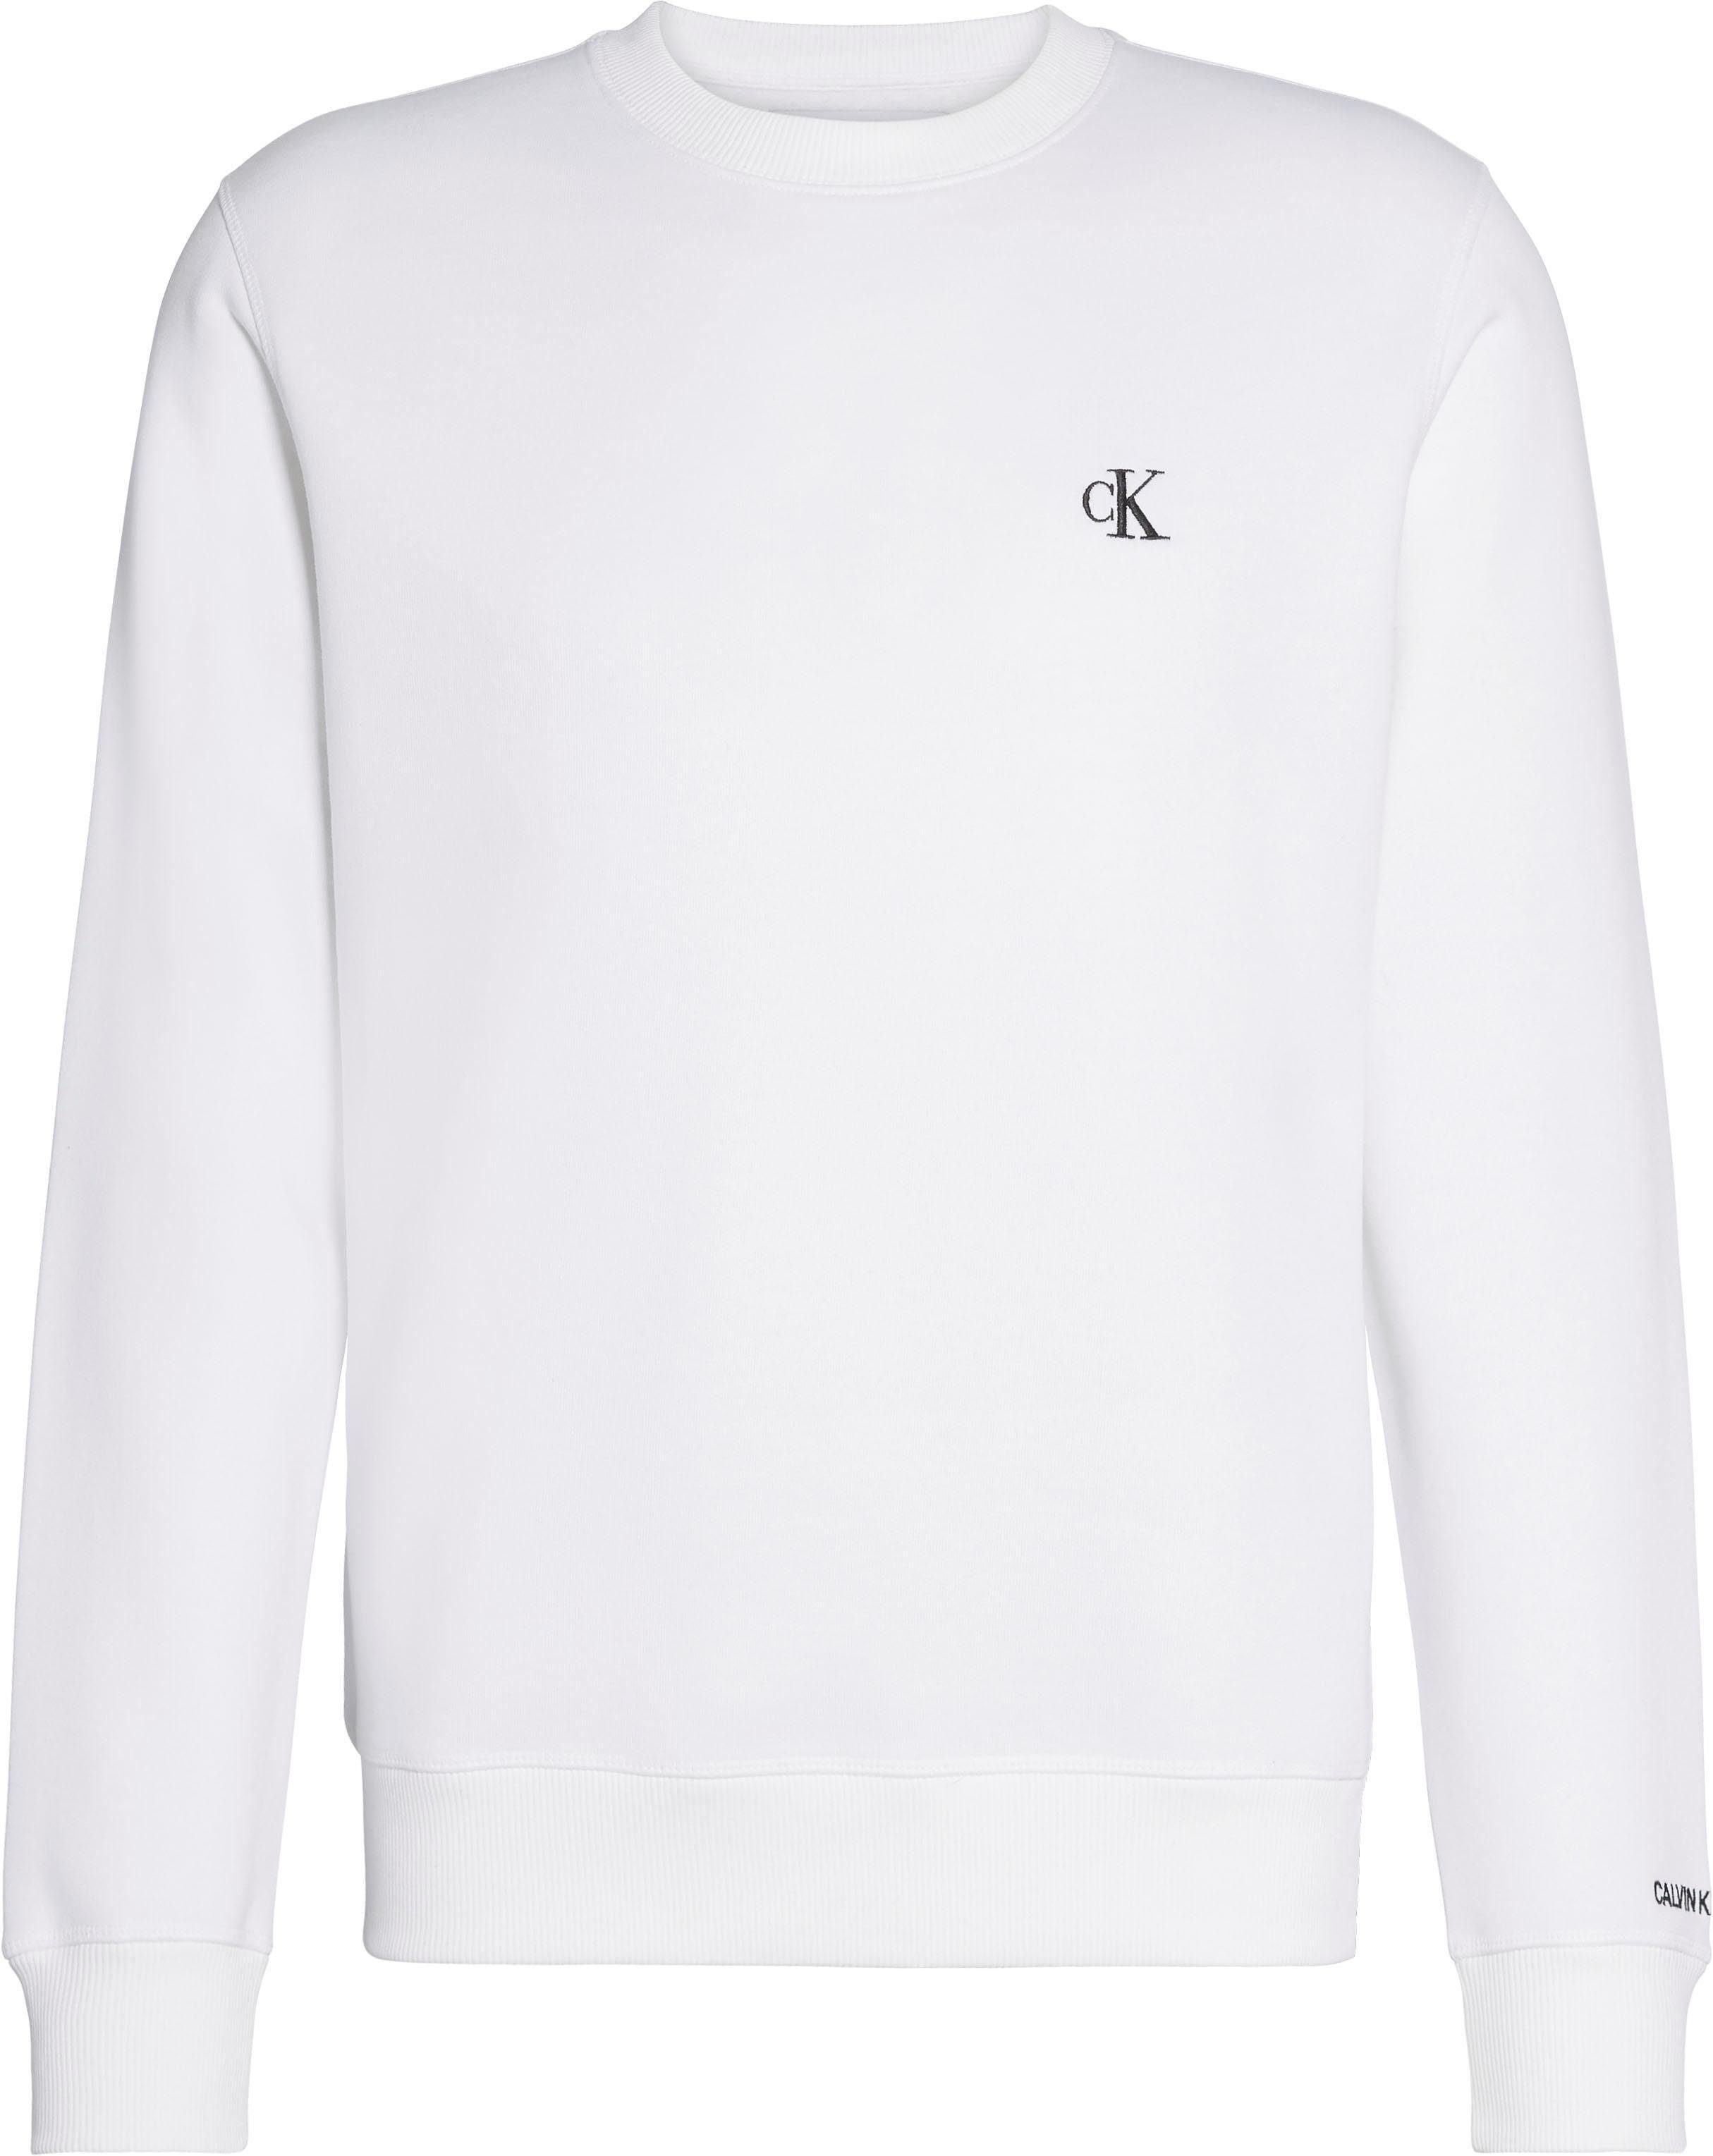 REG ESSENTIAL CK Bright Klein White Jeans CN Sweatshirt Calvin